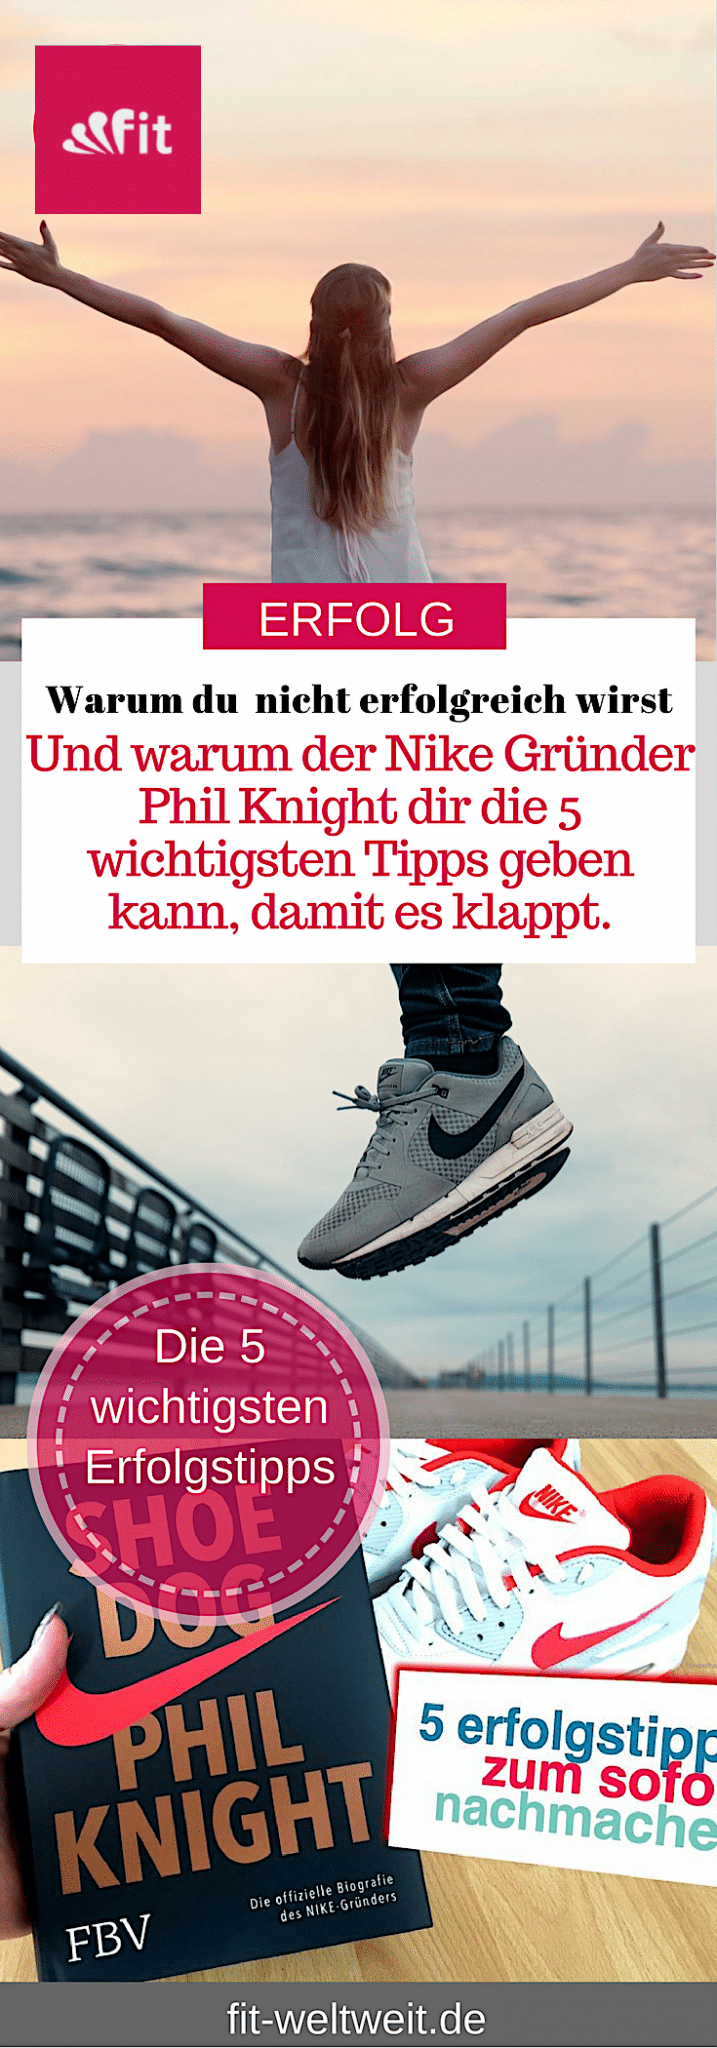 In deinem #Business erfolgreich sein, möchtest du das? Möchtest du das tatsächlich? Bevor du anfängst diesen Post zu lesen: Worin möchtest du #erfolgreich sein? Warum möchtest du erfolgreich sein? Möchtest du, dass sich die Mensch an dich (zurück) erinnern oder bist du mit (d)einem Durchschnittsleben zufrieden? 5 #Erfolgstipps, die wir vom #Nike Gründer Phil Knight lernen können. #Bossbabe Erfolg Erfolgstipps #Nike Phil Knight #Biografie